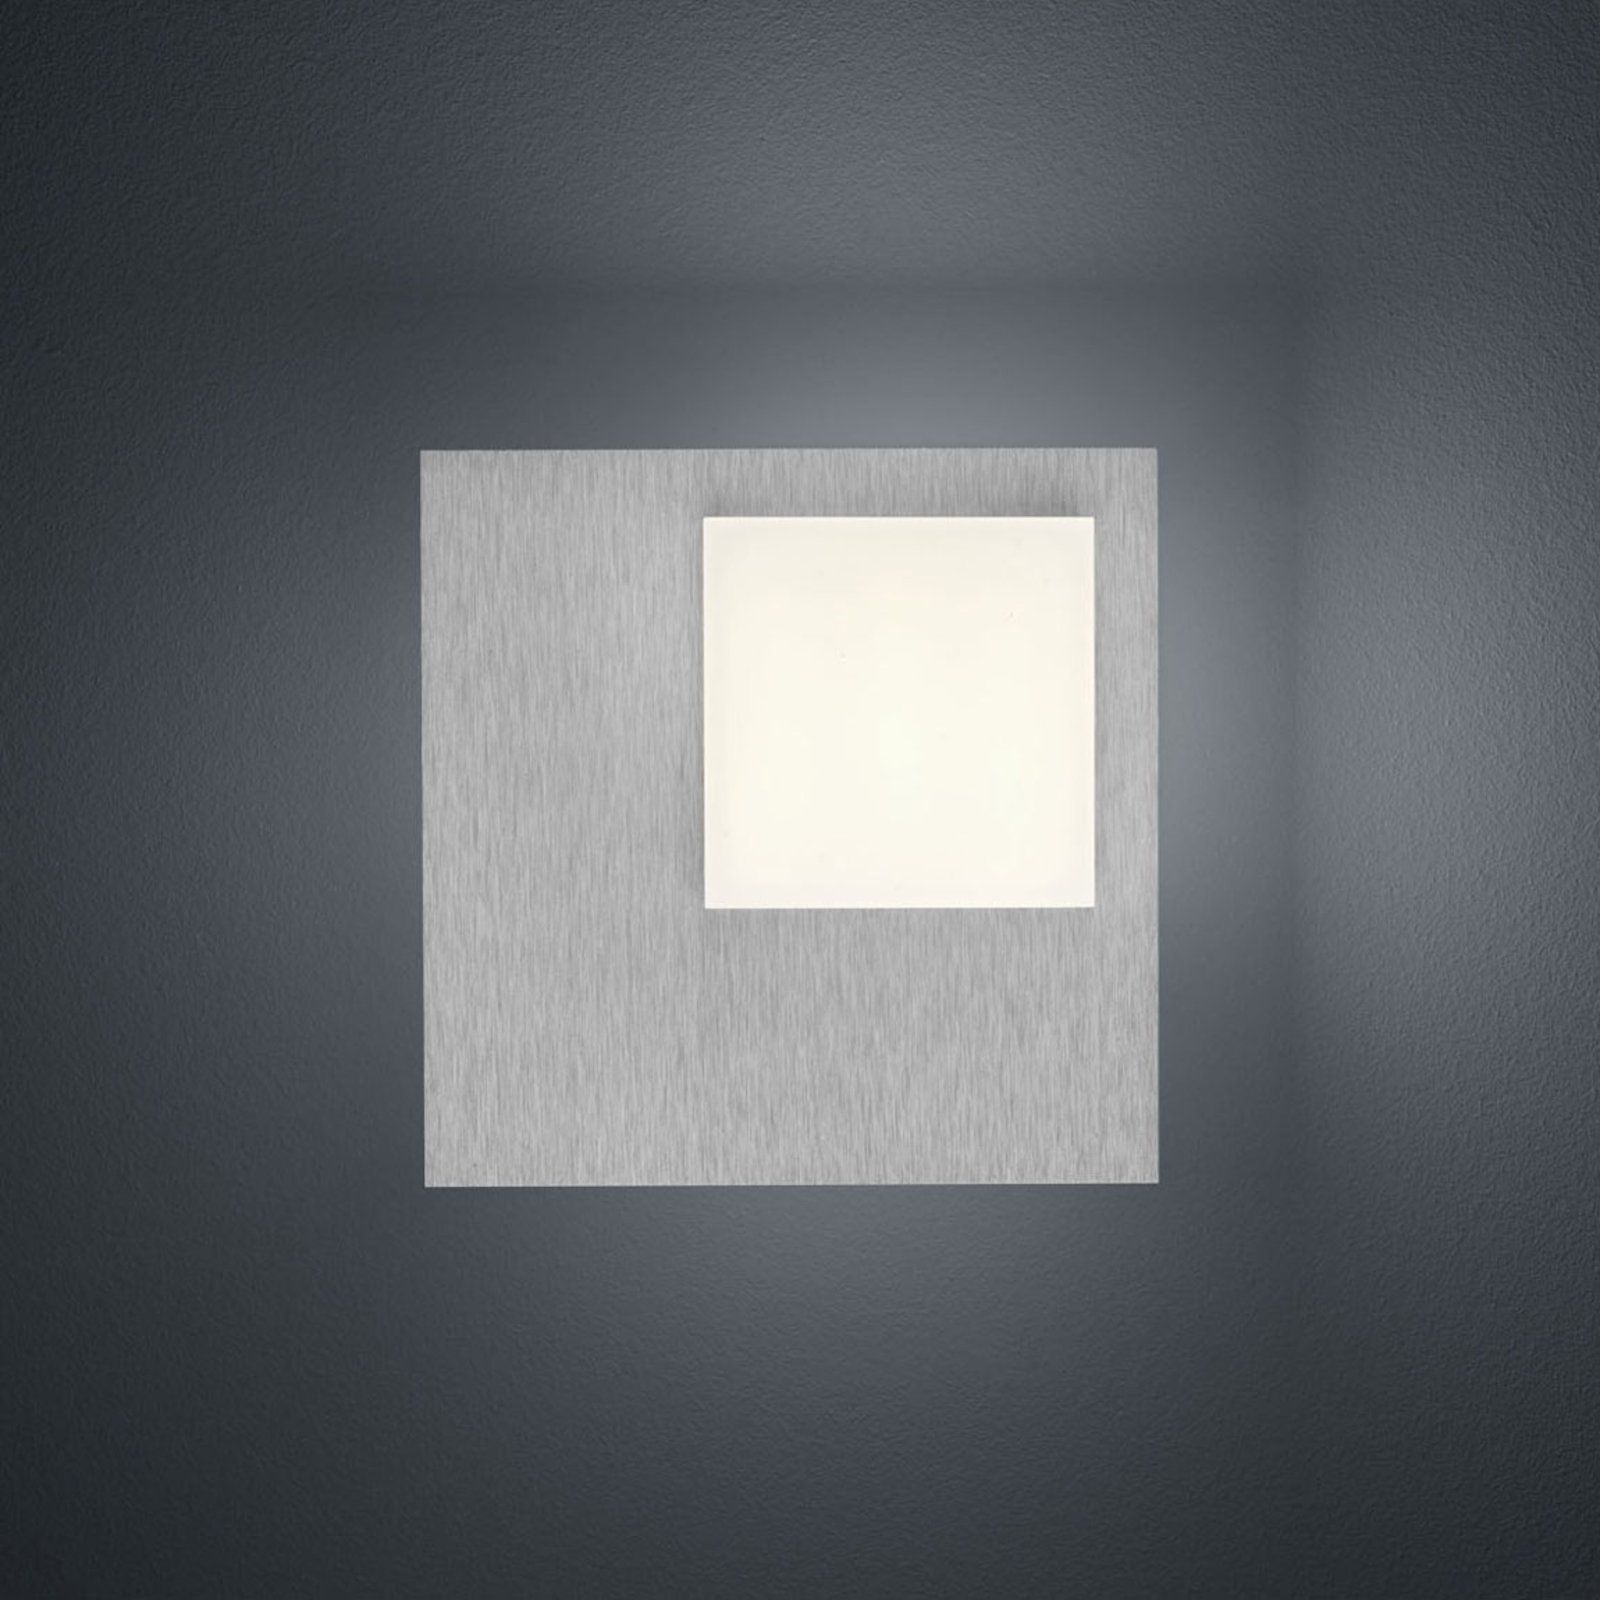 BANKAMP Cube LED-loftlampe, 8 W, sølv